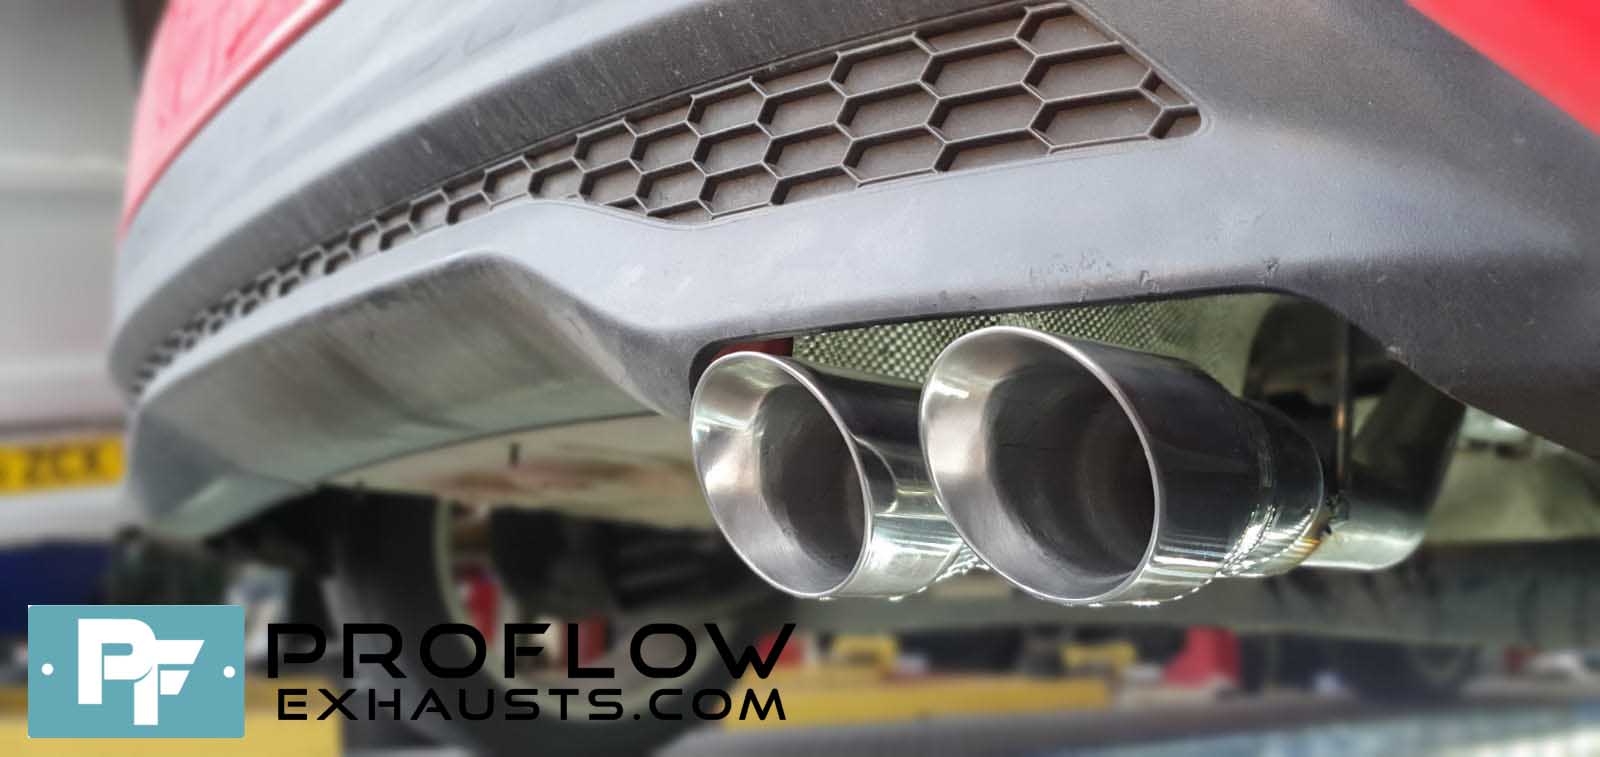 Custom Built Proflow Exhaust For Ford Fiesta Mk 7.5 Ecoboost Back Box Delete (4)